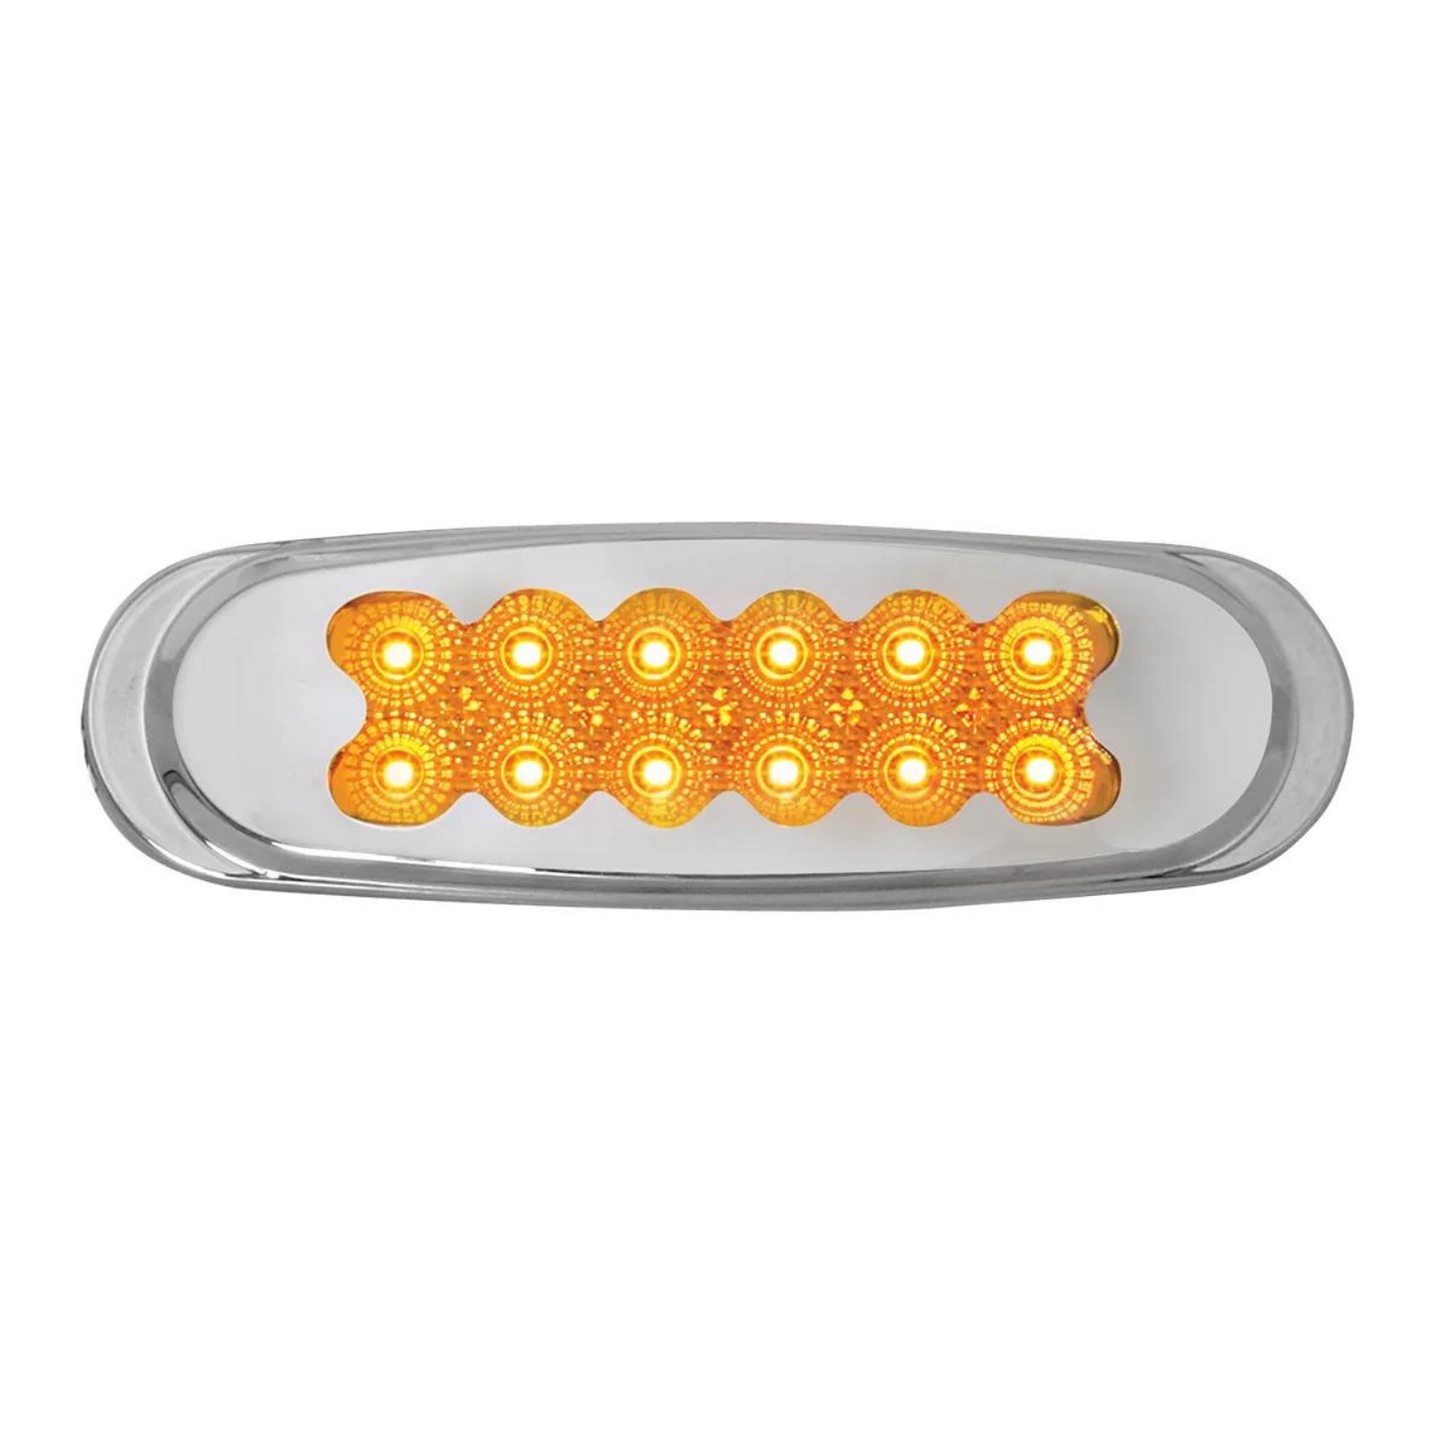 Spyder 12 LED Light with Chrome Plastic Bezel in Amber